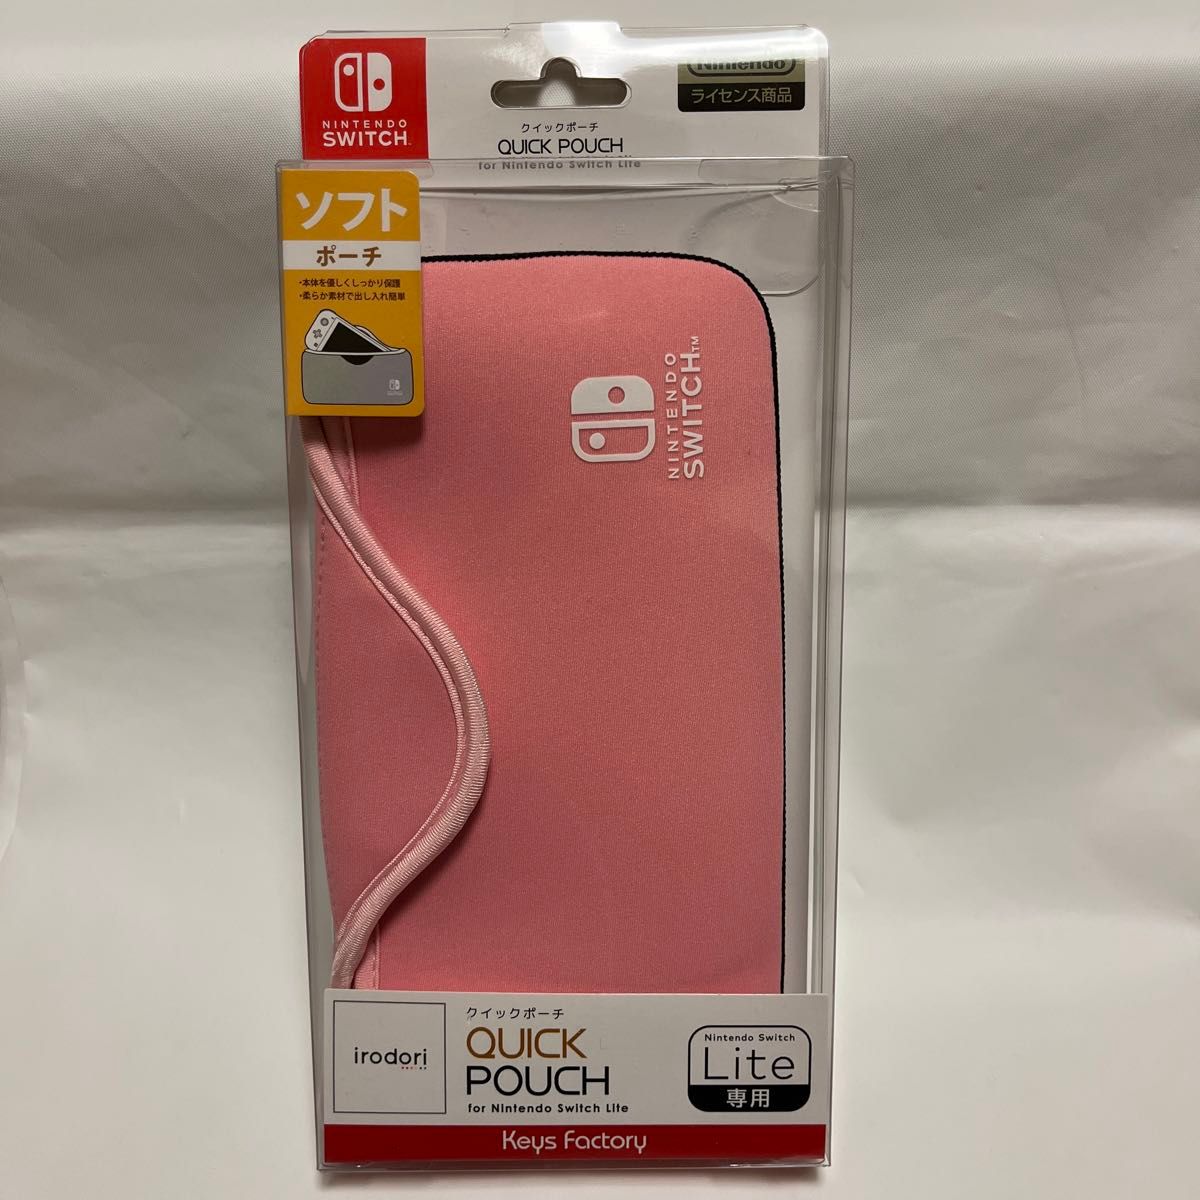 新品未開封 QUICK POUCH for Nintendo Switch Lite ペールピンク【24時間以内発送】